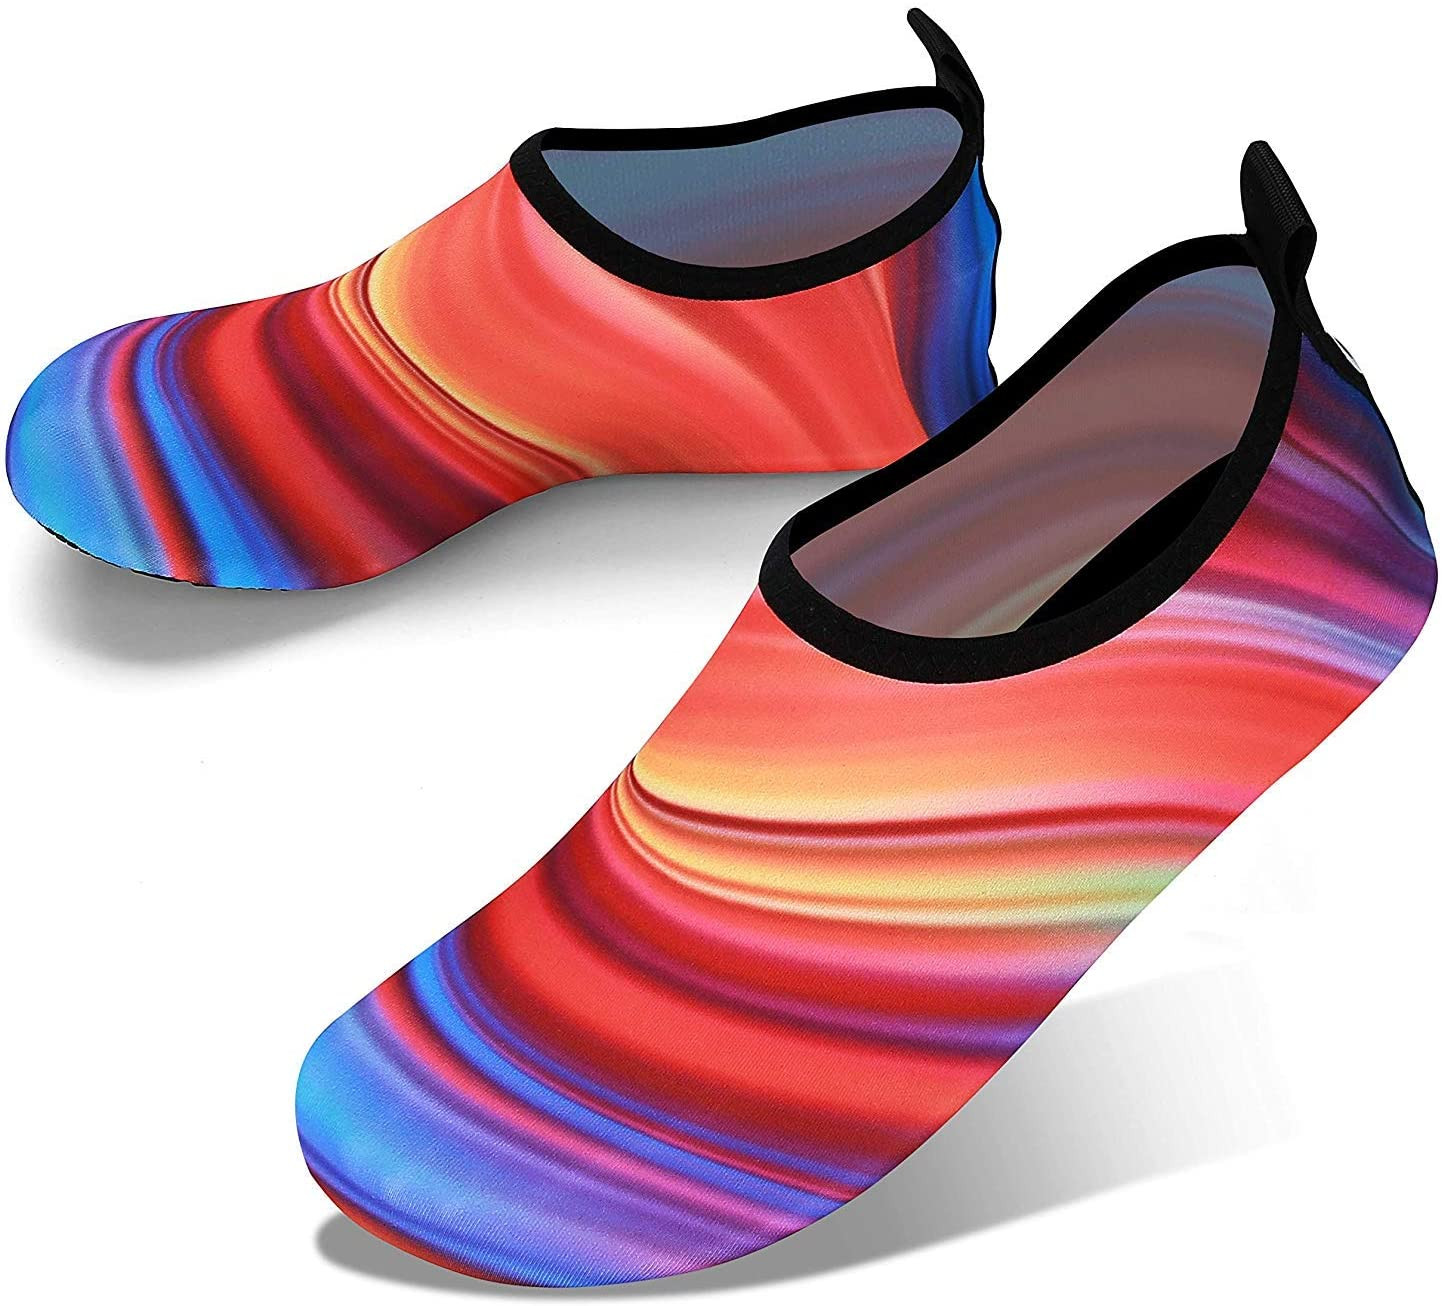 Joto Zapatos de para Mujer Hombre Niño, Zapatillas Acuáticas Secado Rápido Tipo Calcetines como Descalzado, Escarpines Deportivos Playa Buceo Snorkel Surf, 46-47 XXXL 28,6 cm, color Atardecer